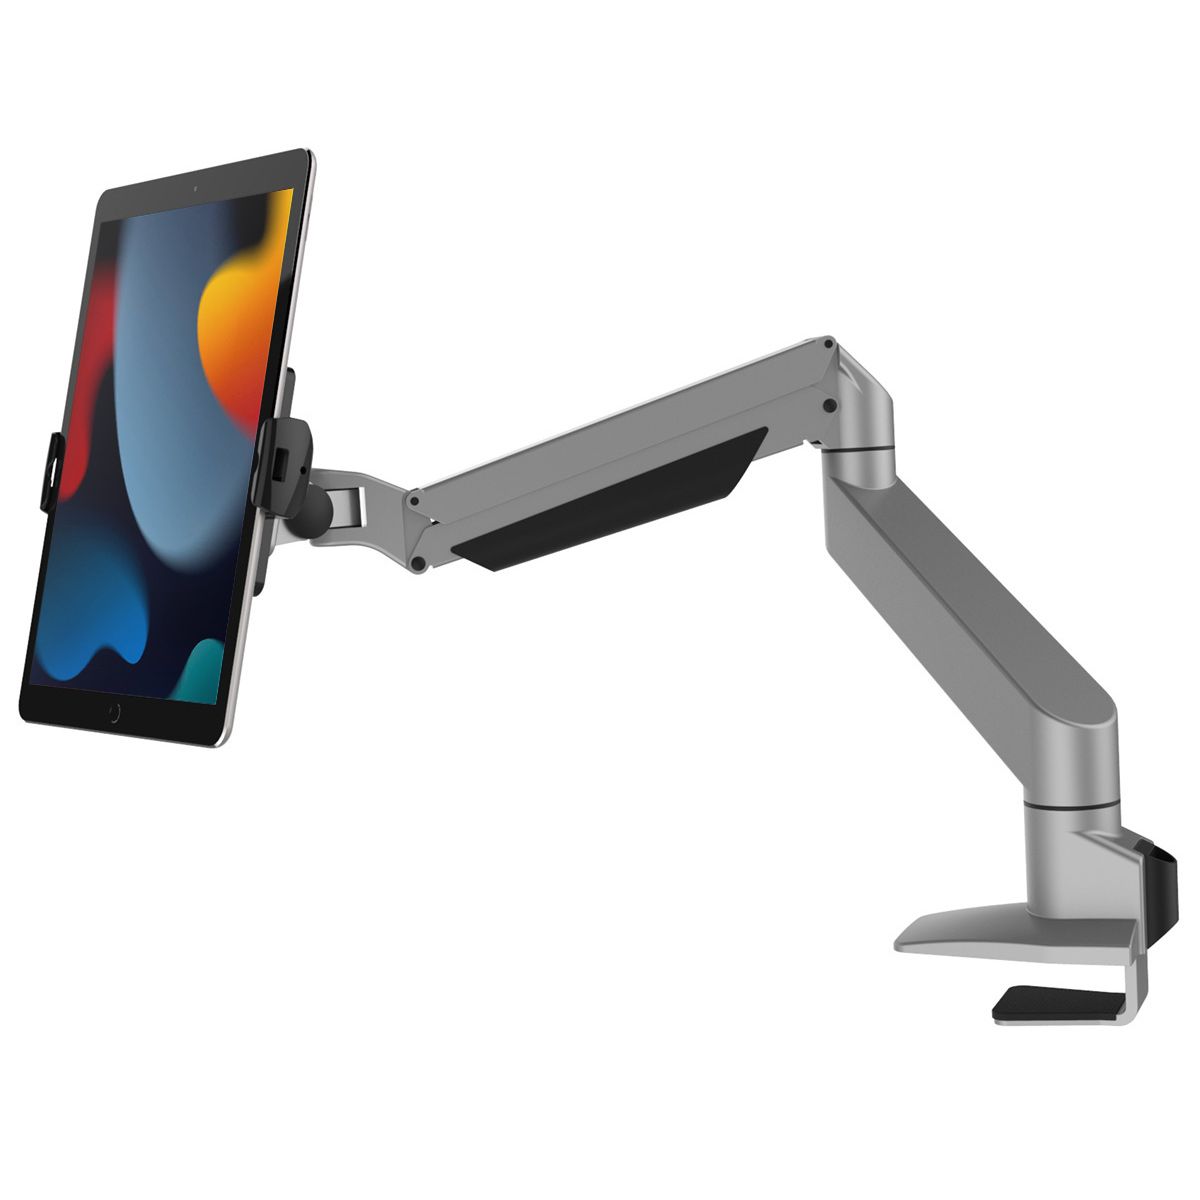 Tisch montierbare Tablet Halterung mit artikulierenden Arm für iPad oder  Android